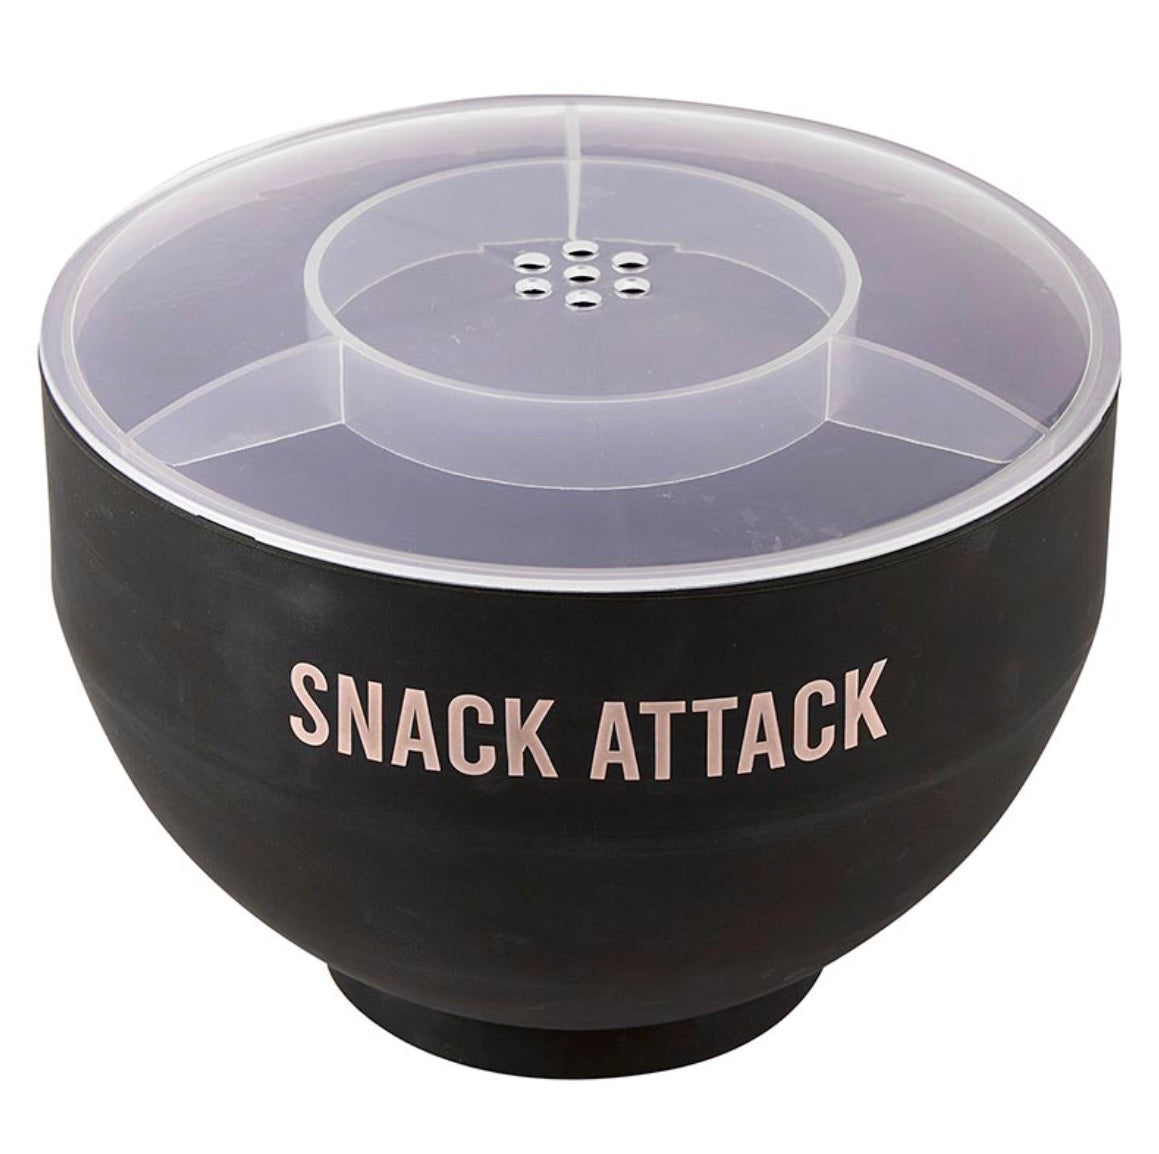 Popcorn Bowl by Santa Barbara. Black bowl with white script 'Snack Attack'